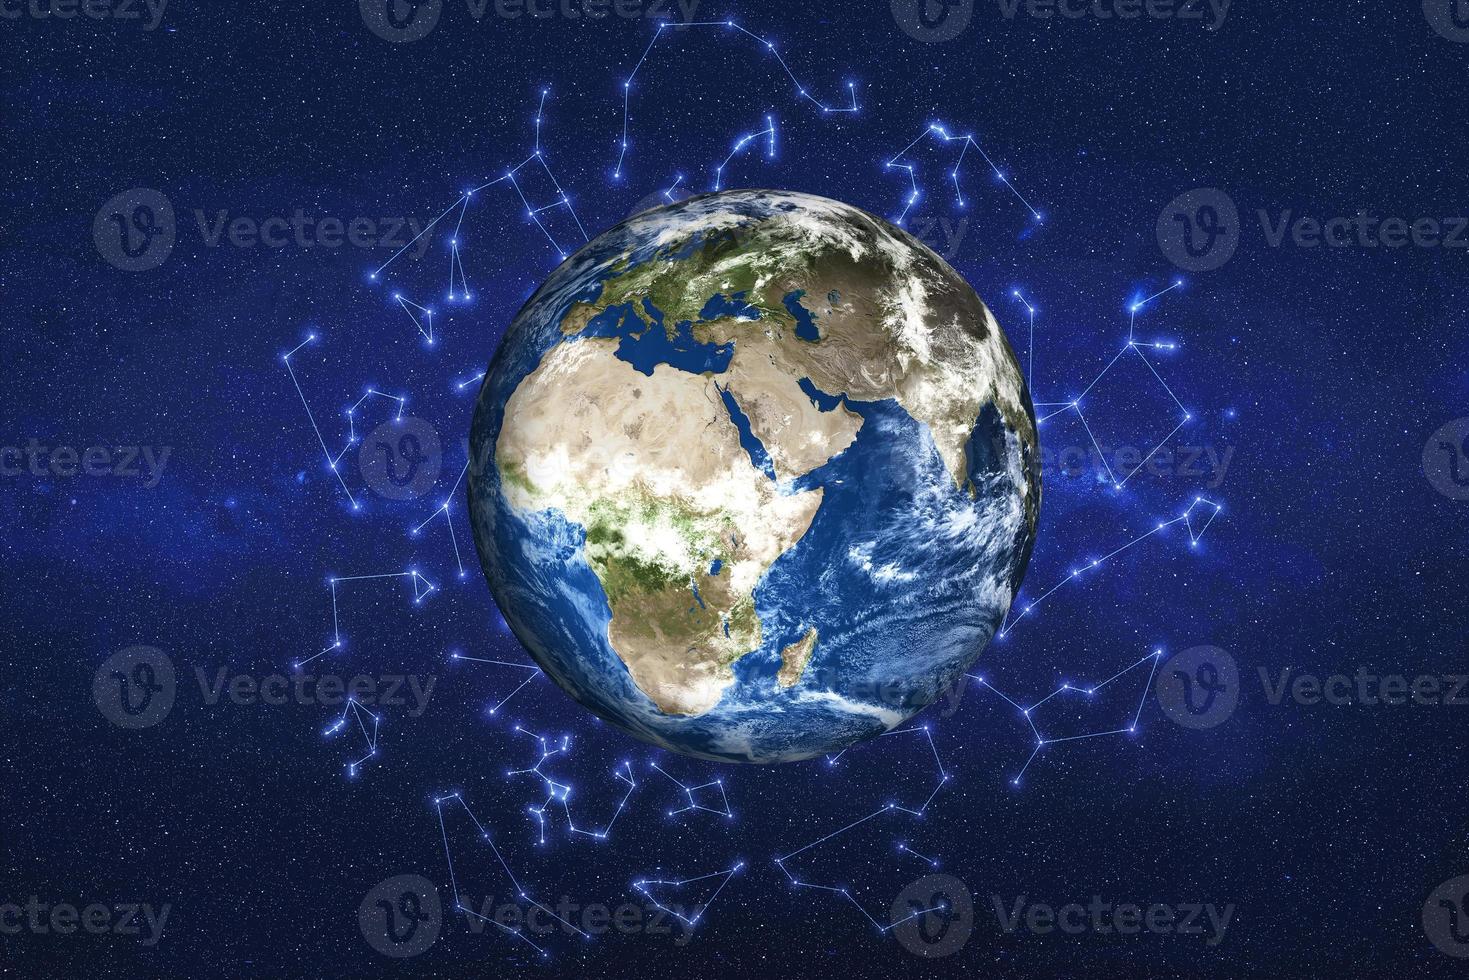 Tageslicht Planet Erde im Weltraum mit Tierkreiszeichen im Hintergrund. Nord-und Südamerika. Blauer Planet. Science-Fiction. elemente dieses bildes wurden von der nasa bereitgestellt foto